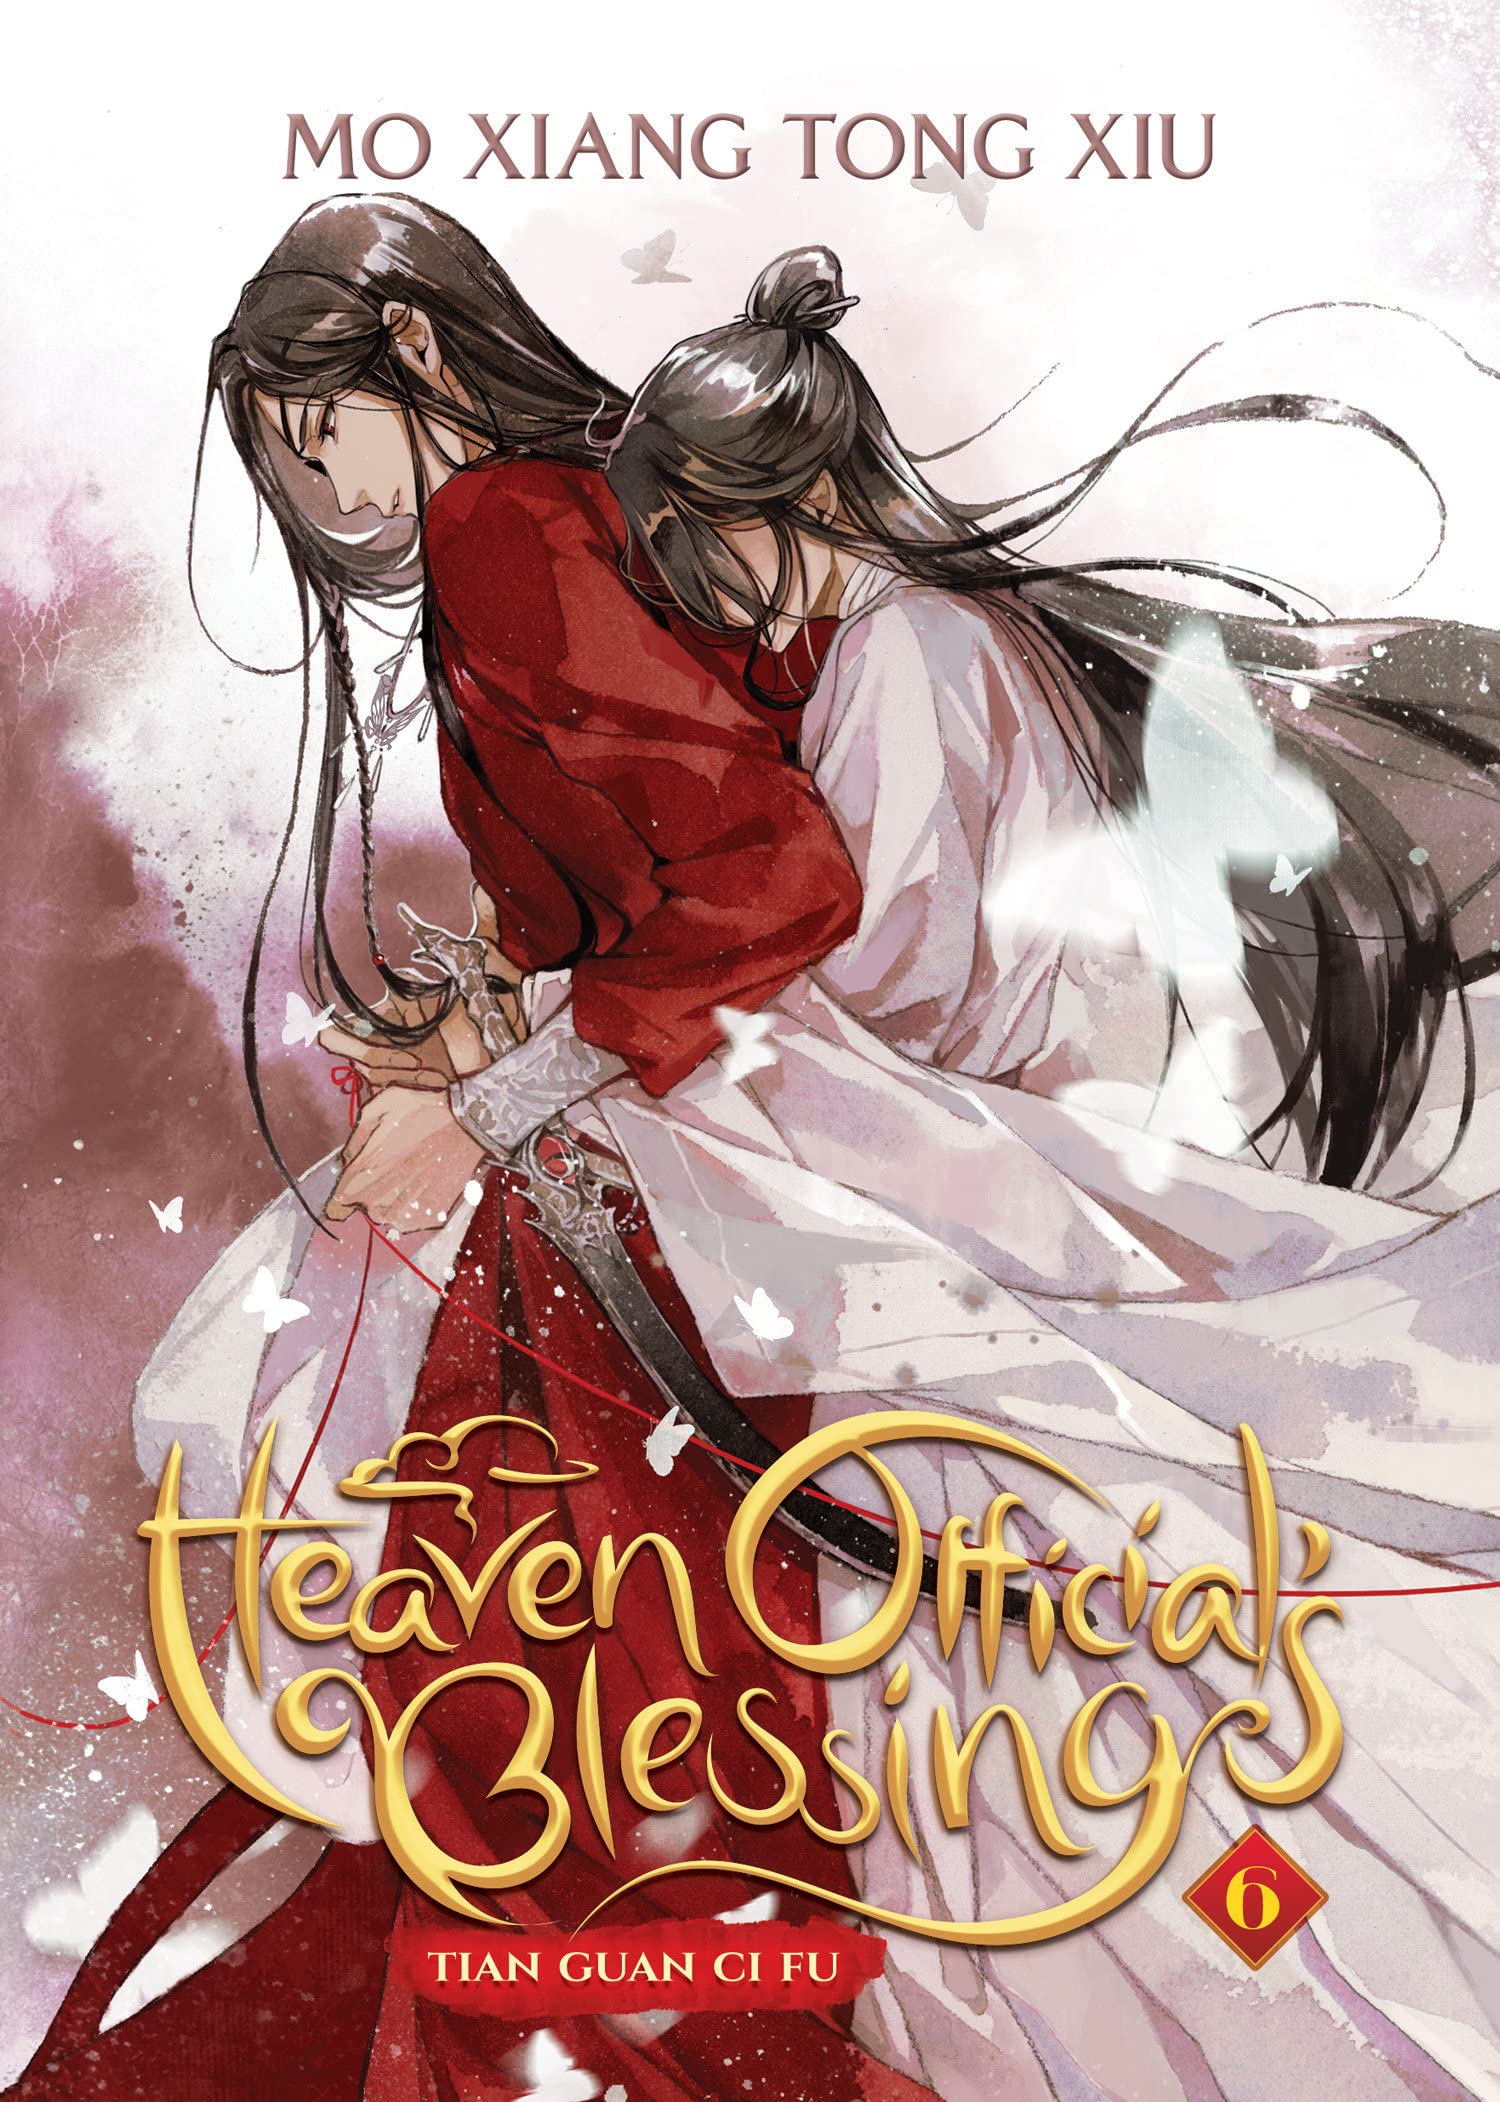 Heaven Official's Blessing: Tian Guan Ci Fu - Novel - Band 06 (Englisch) - J Store Online